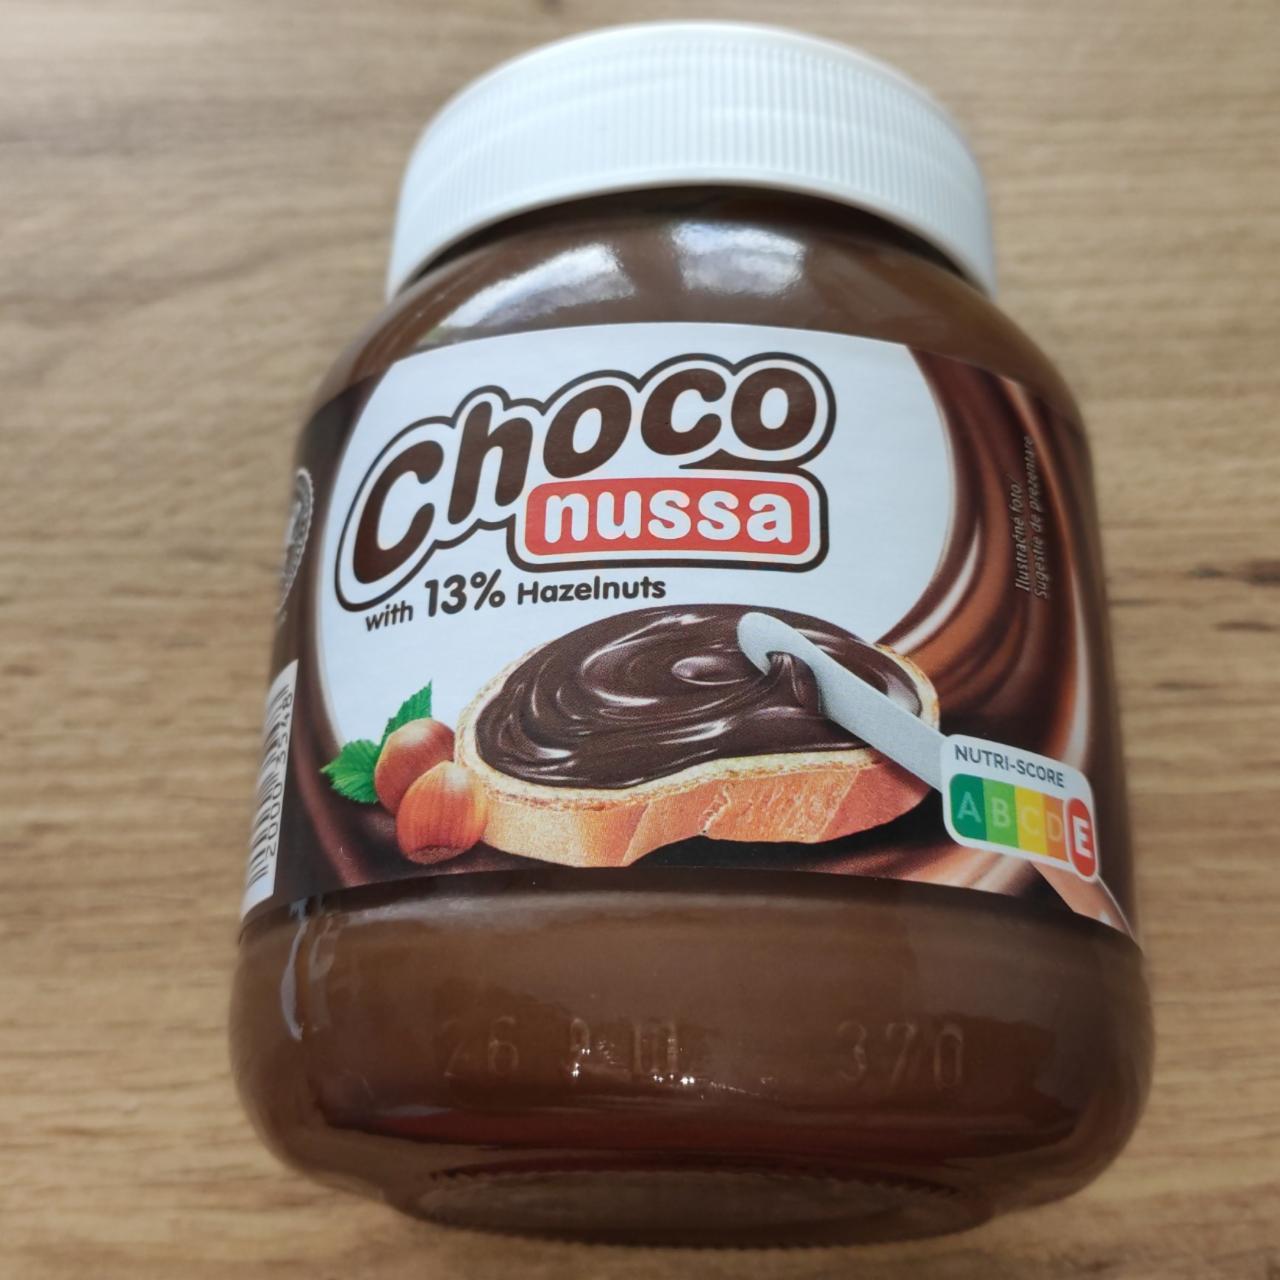 Fotografie - Choco nussa with 13% Hazelnuts